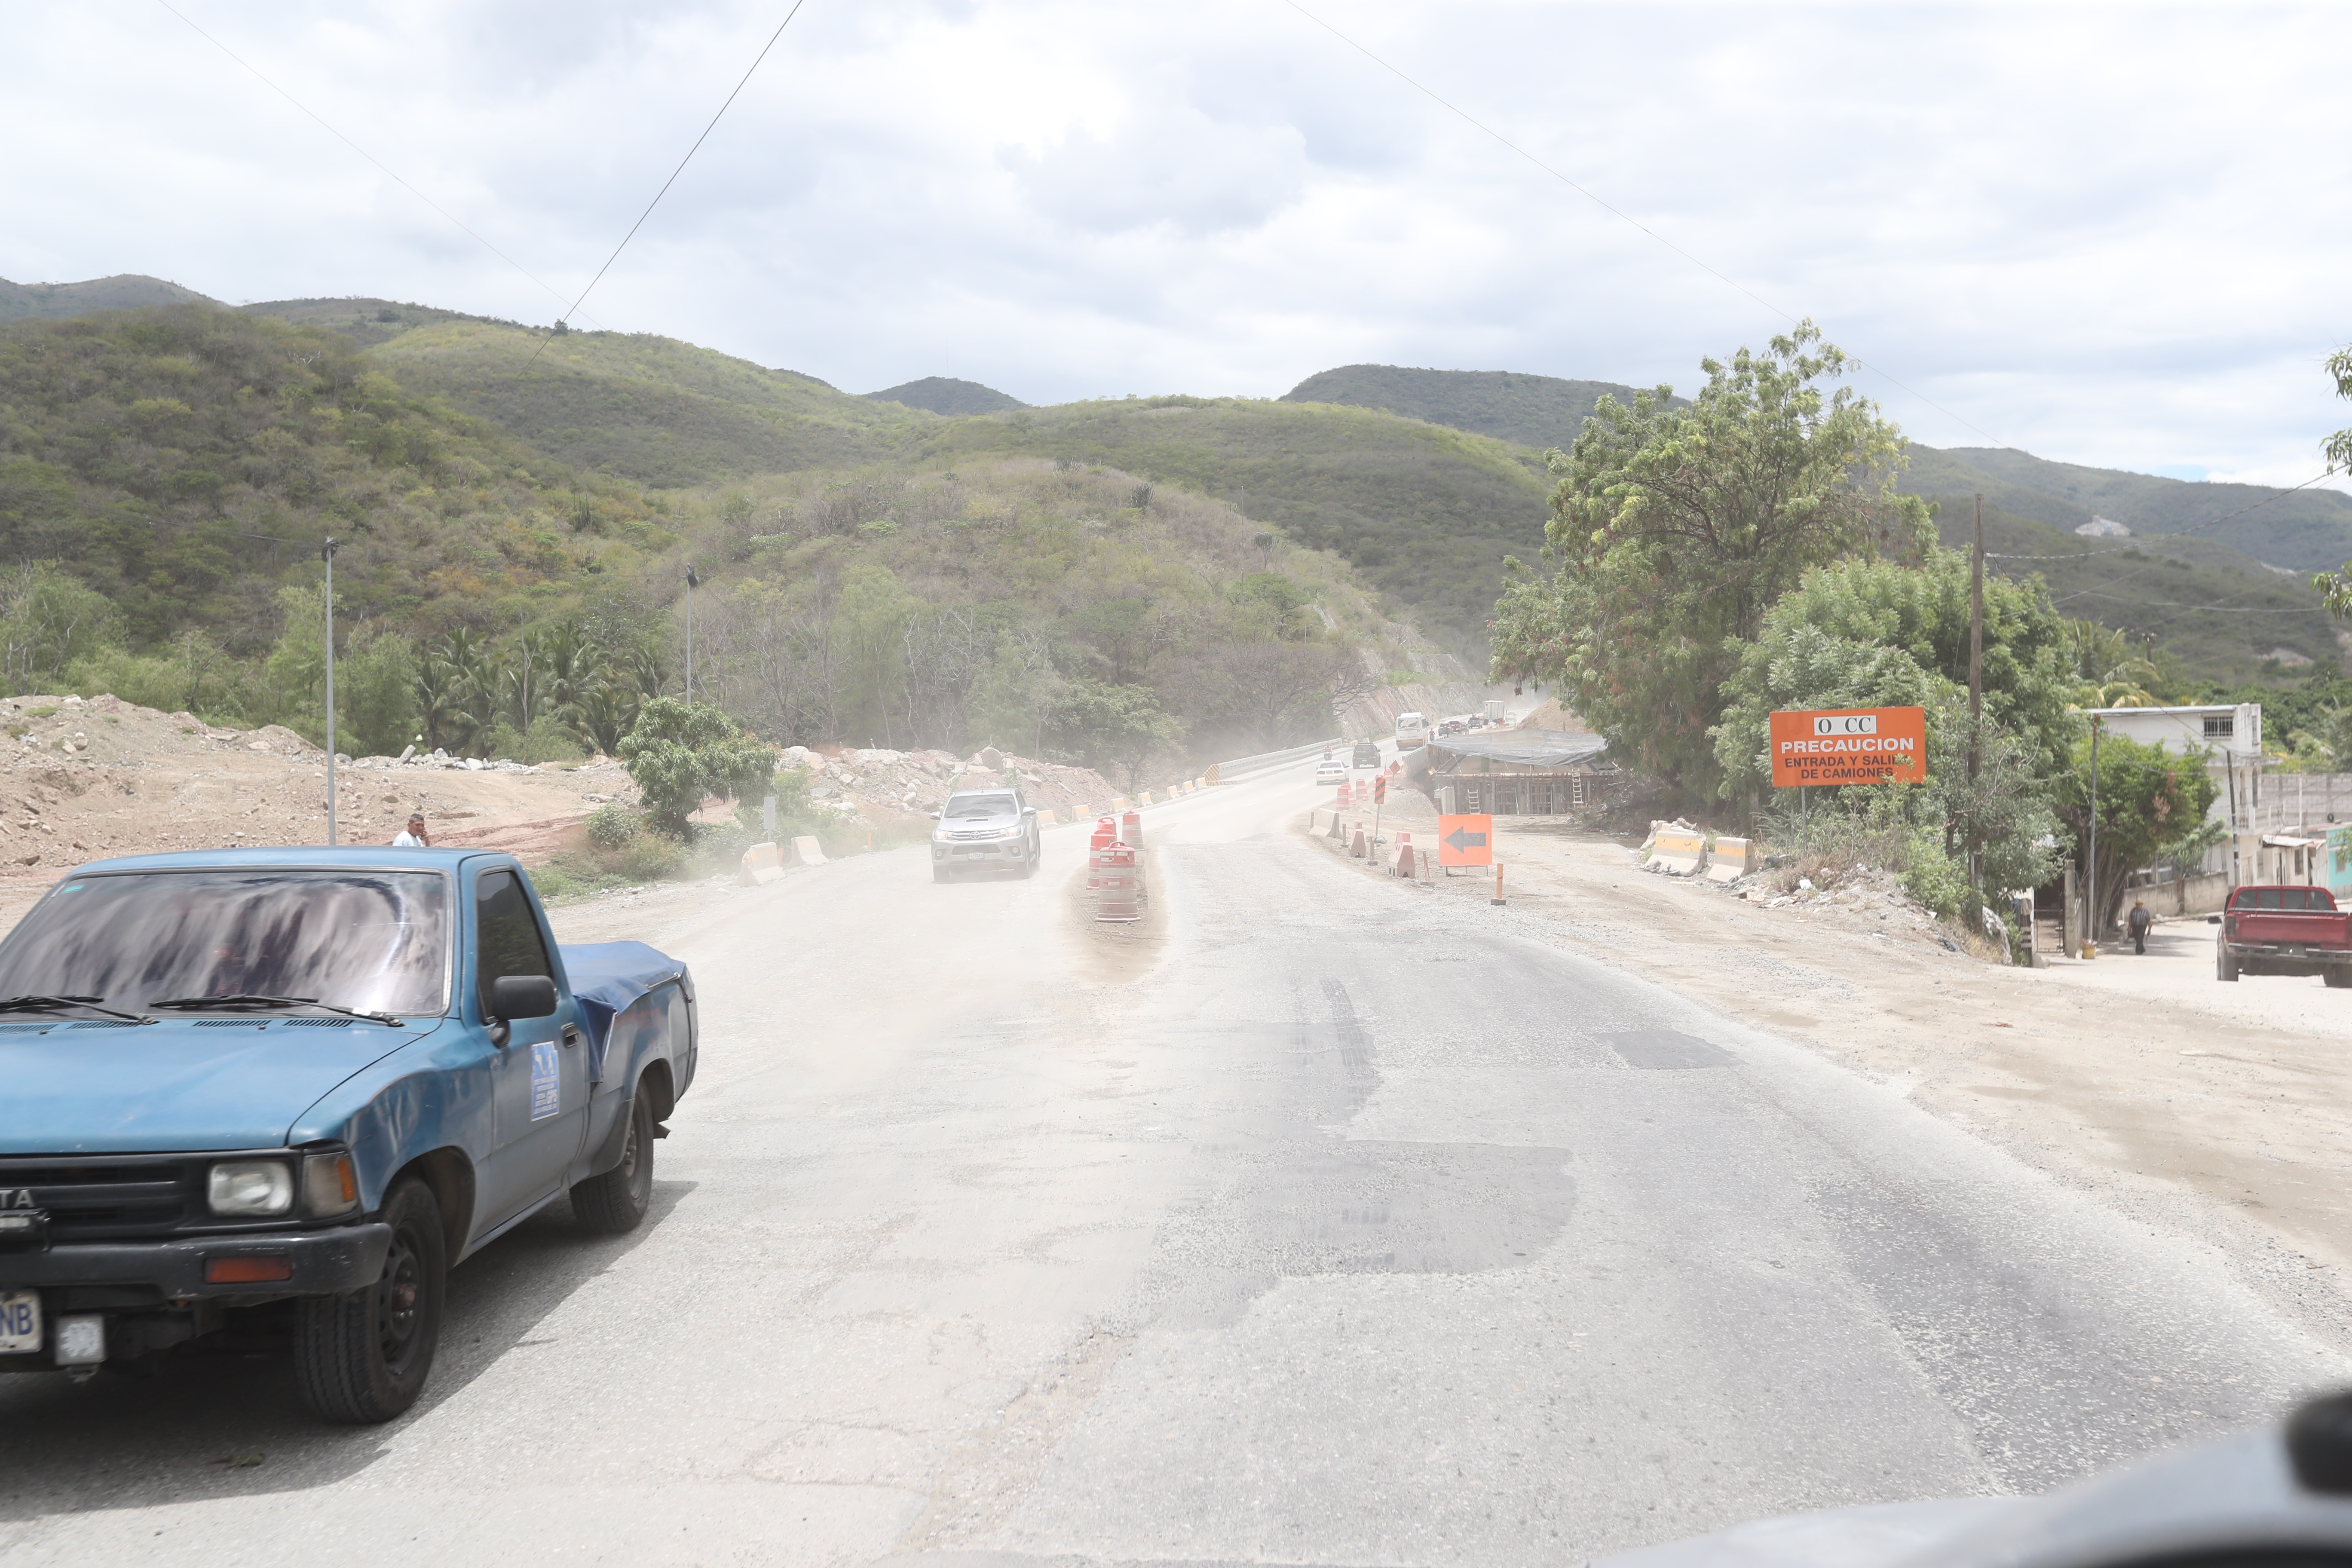 El CIV solicitó una readecuación presupuestaria para inversión física de varios tramos carreteros al Ministerio de Finanzas por Q135 millones. (Foto Prensa Libre: Hemeroteca)